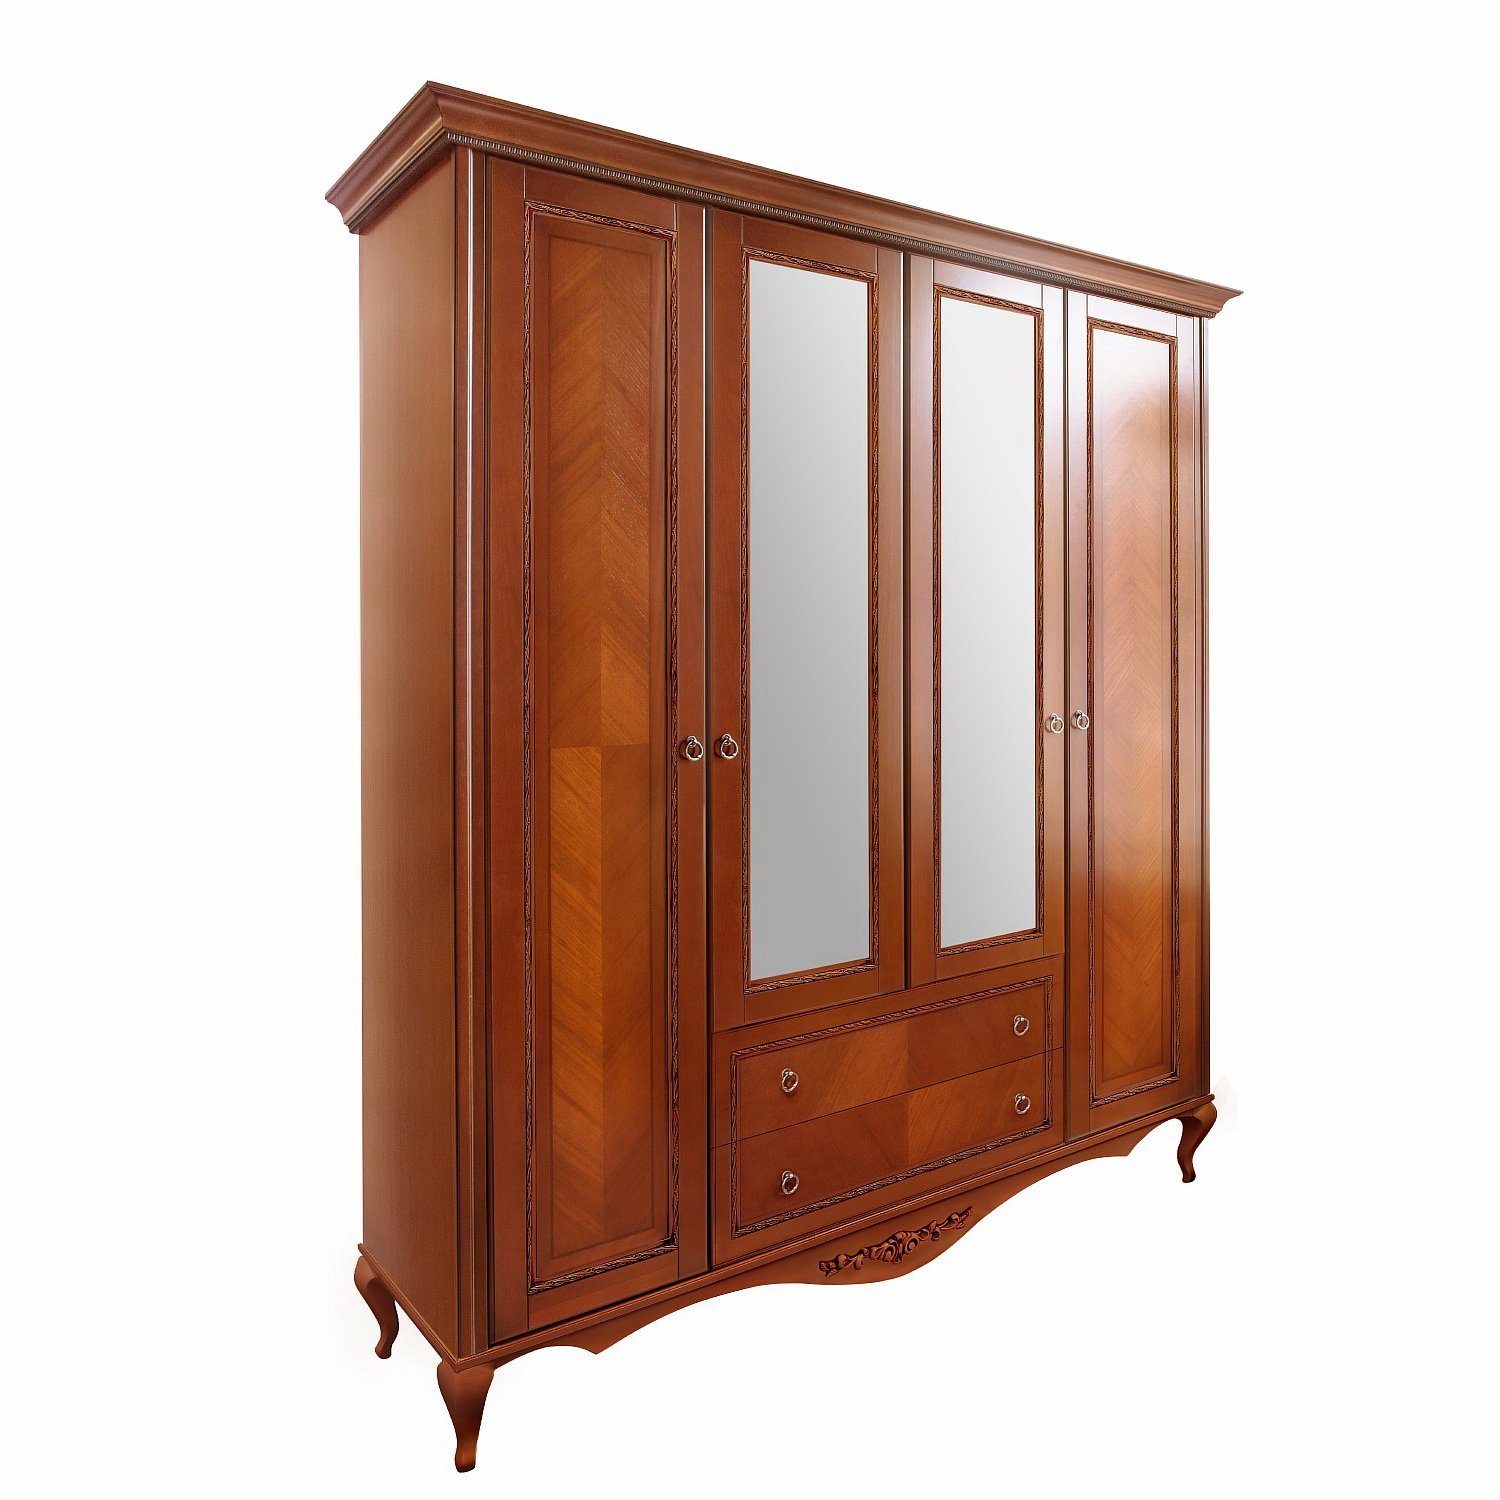 Шкаф платяной Timber Неаполь, 4-х дверный с зеркалами 204x65x227 см цвет: янтарь (T-524)T-524